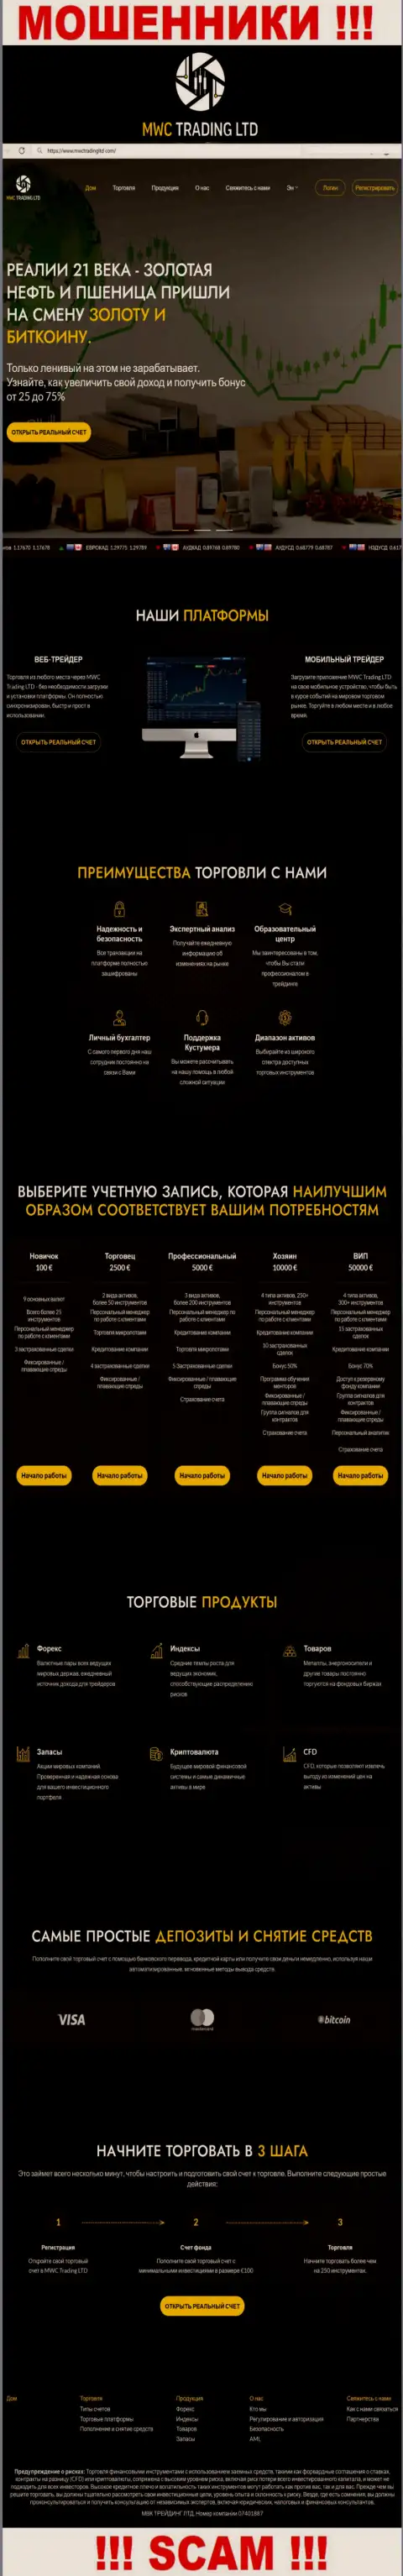 Скрин официального сервиса противоправно действующей организации МВКТрейдингЛтд Ком